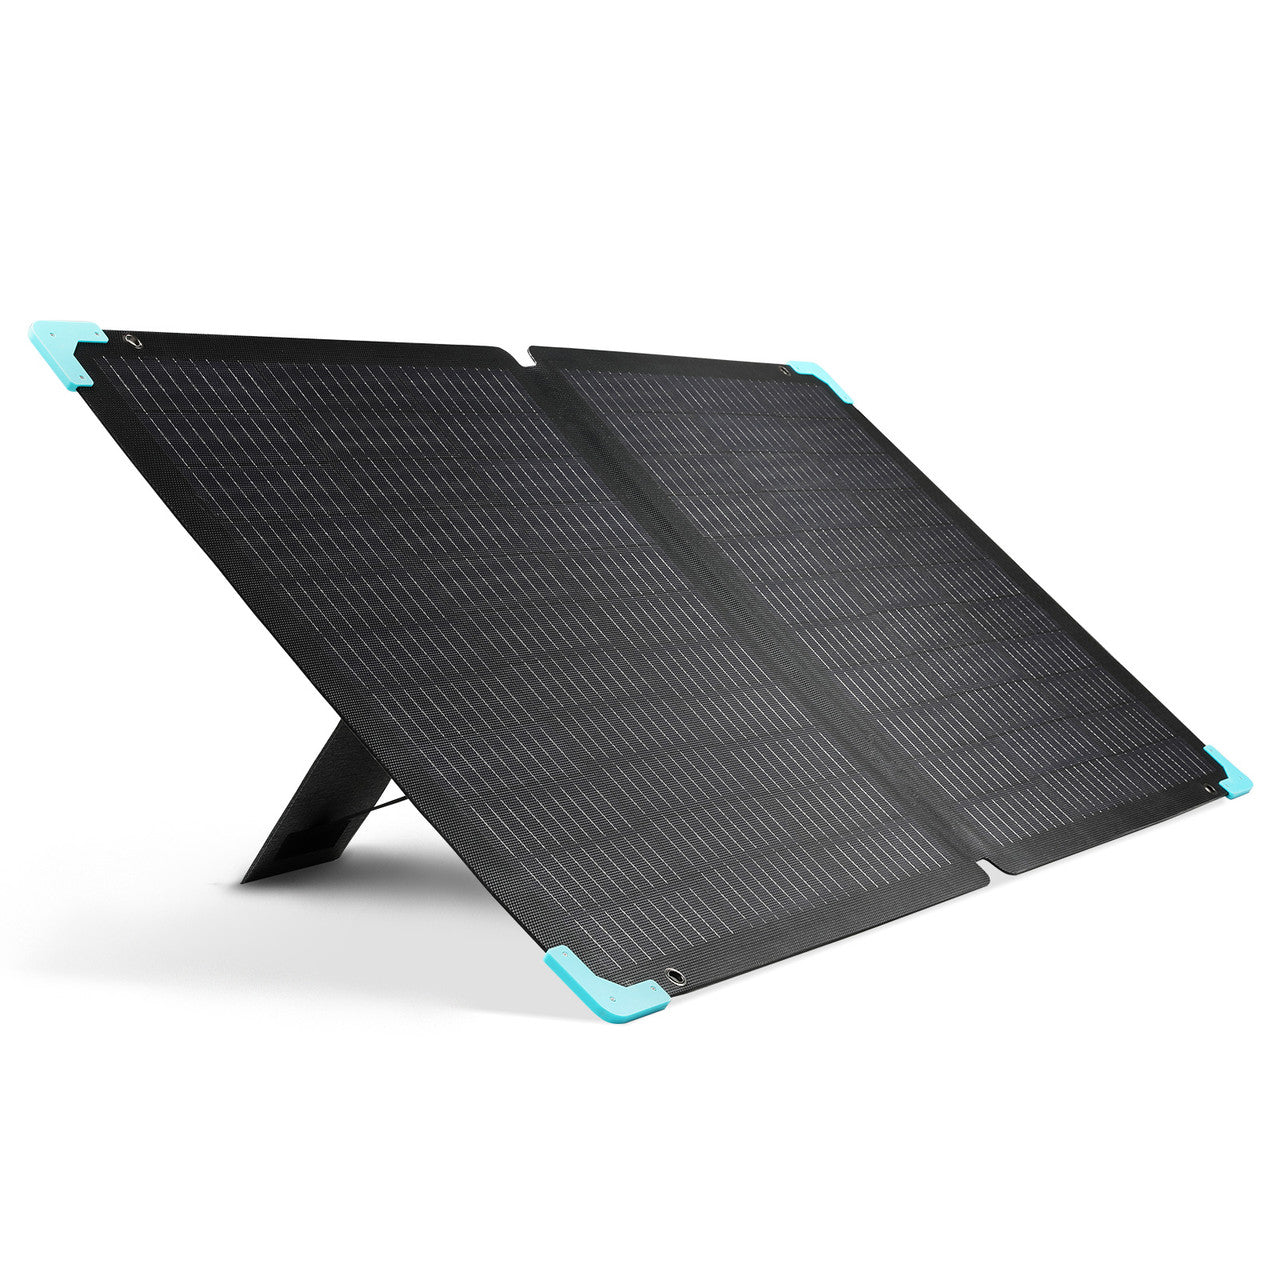 E.FLEX 120 Portable Solar Panel  portable solar panel